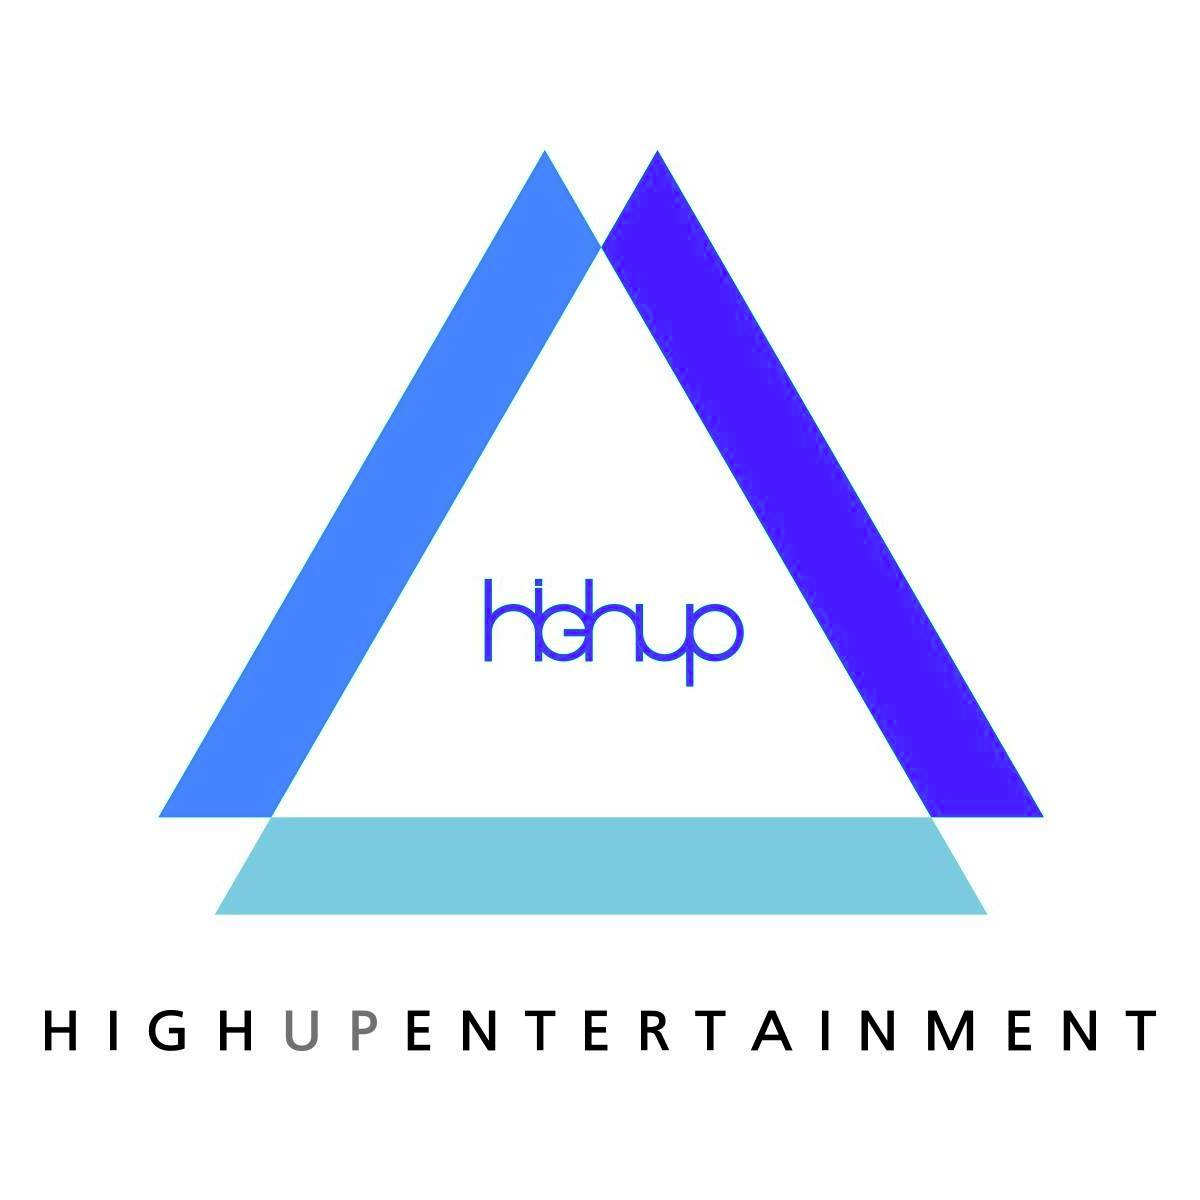 Хай ап. High up Entertainment. High up Entertainment здание. High up Entertainment имена. High up Entertainment прослушивание.